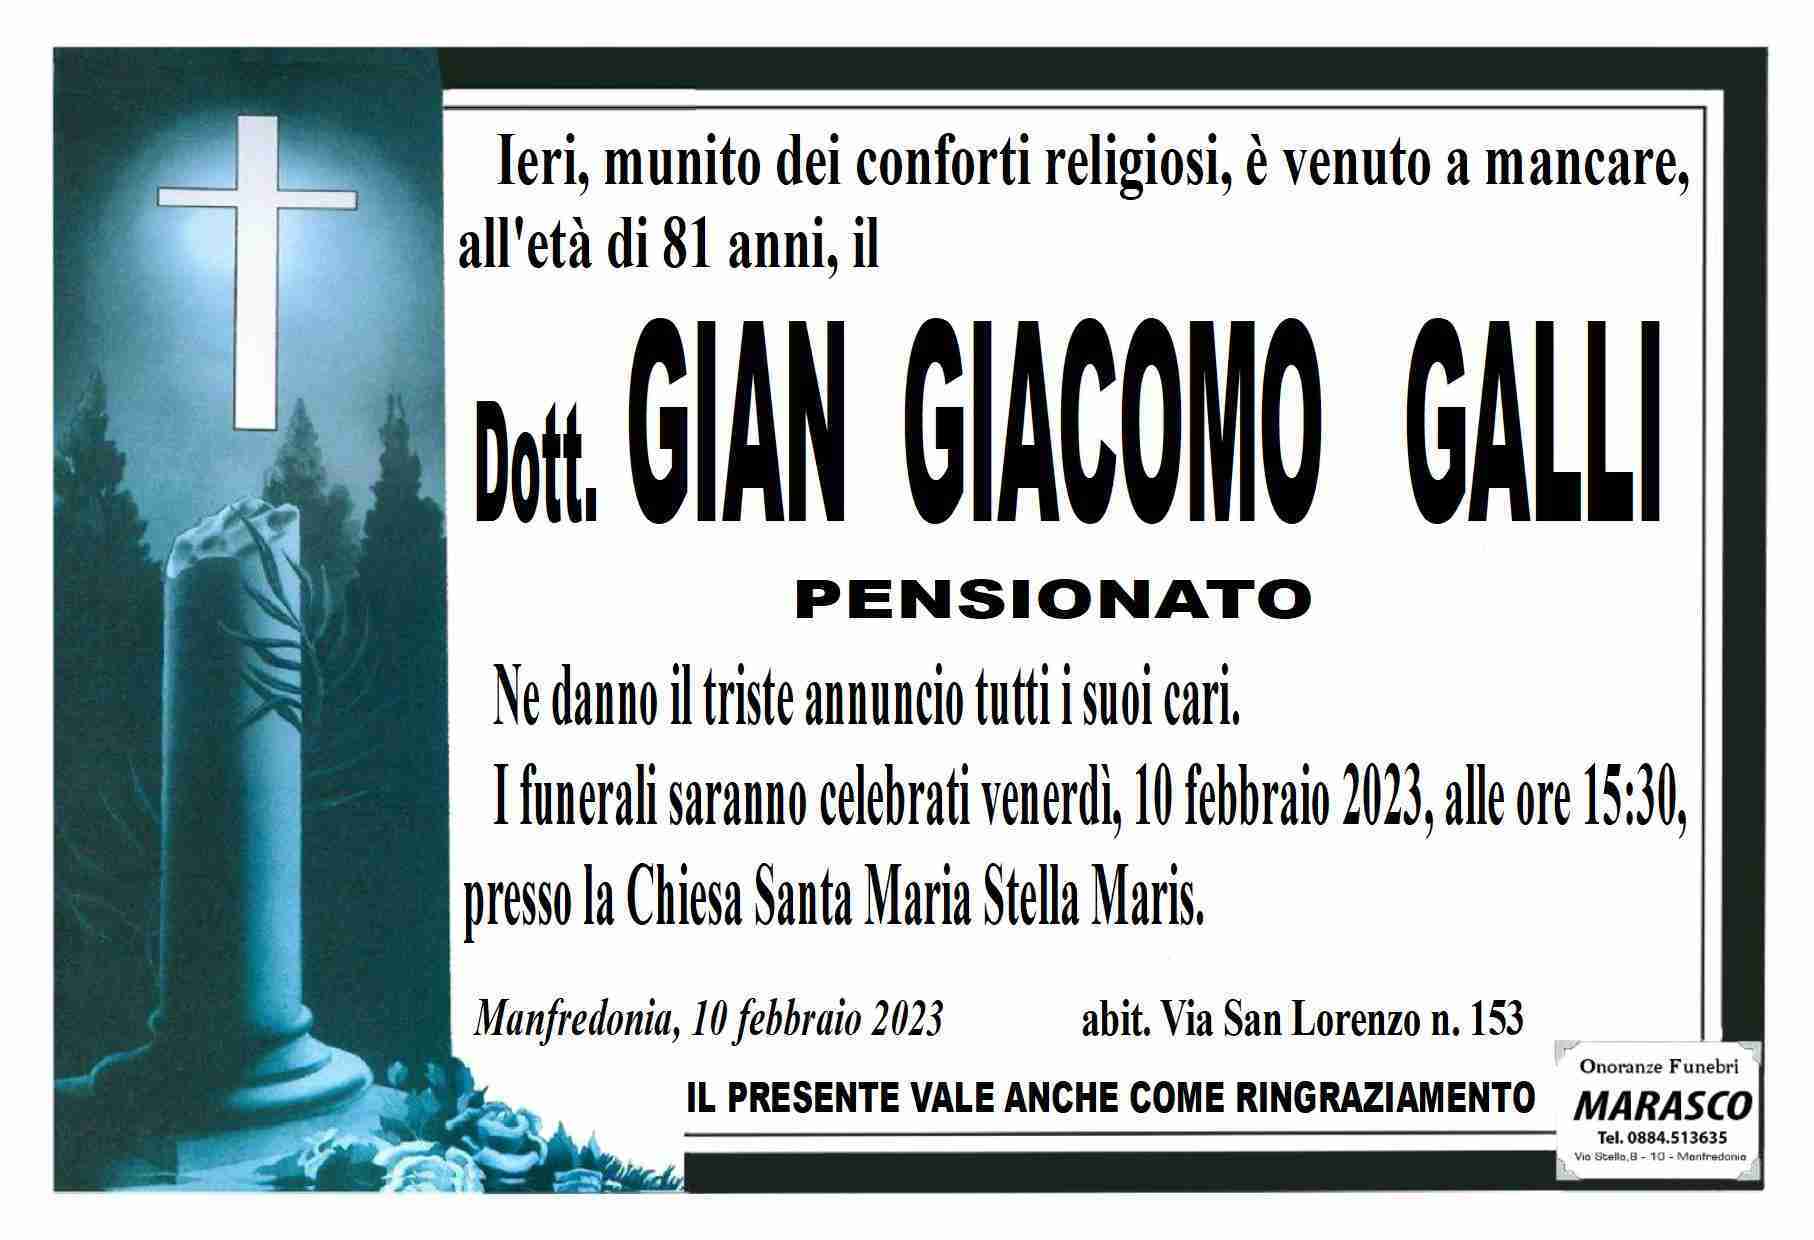 Gian Giacomo Galli